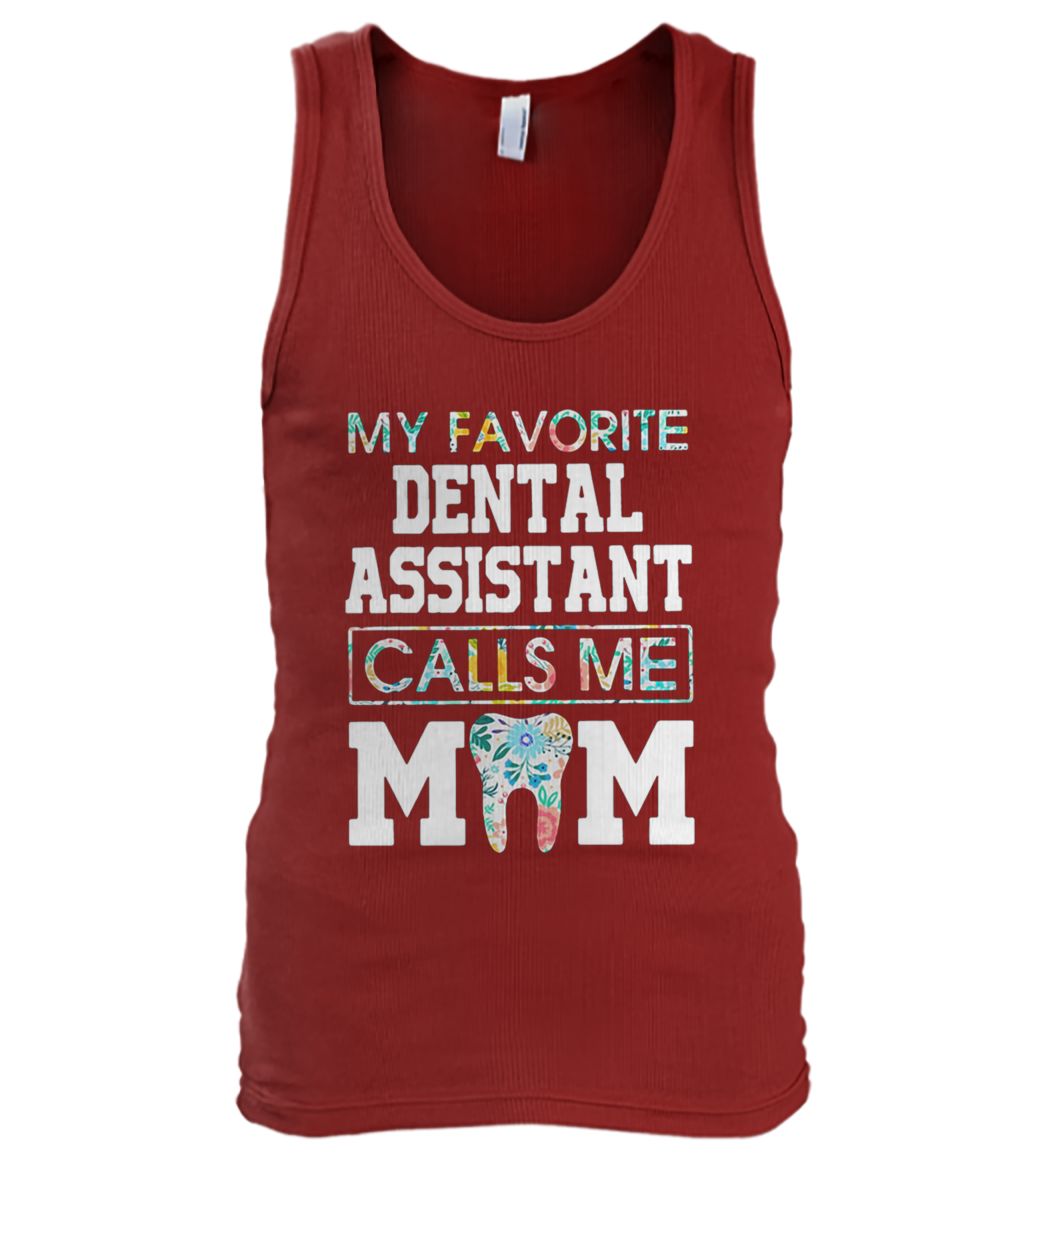 My favorite dental assistant calls me mom men's tank top